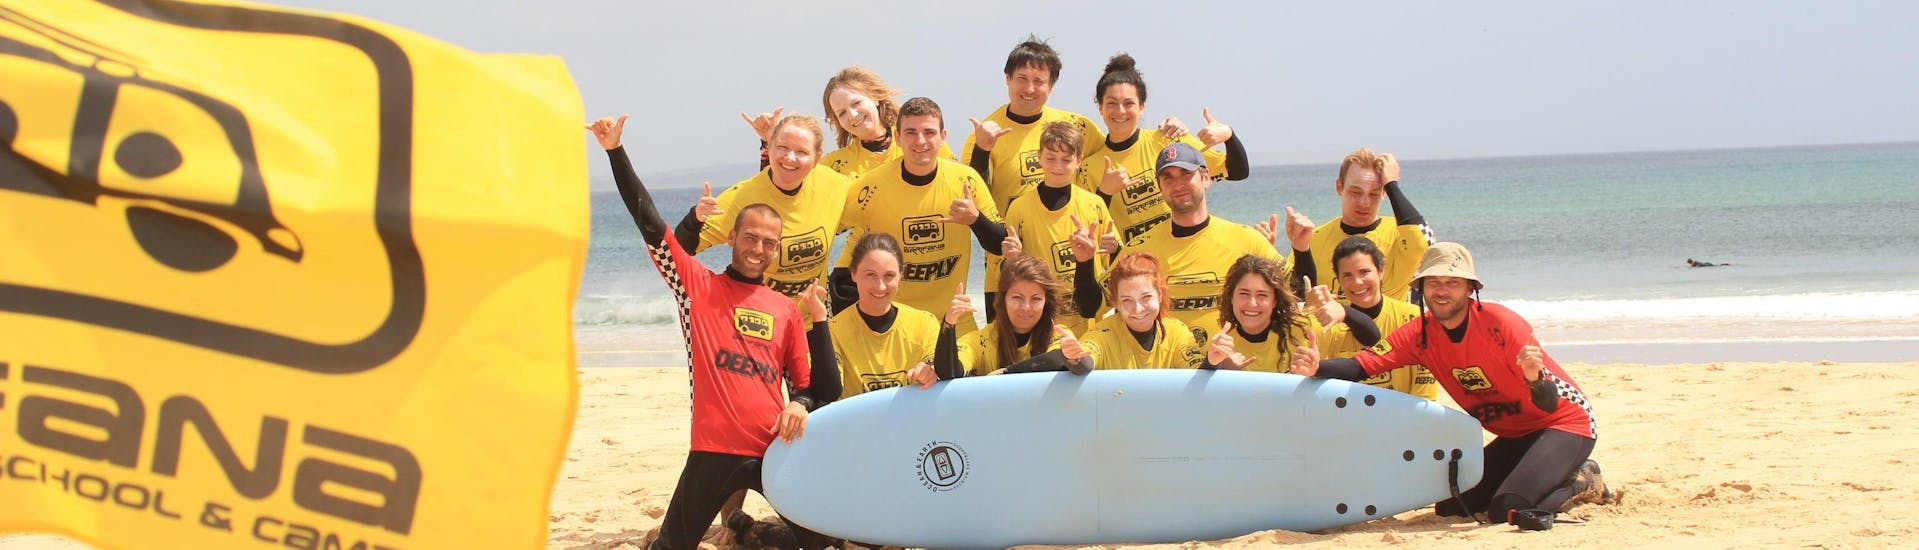 Privé surfcoaching in Arrifana vanaf 15 jaar voor gevorderde surfers.